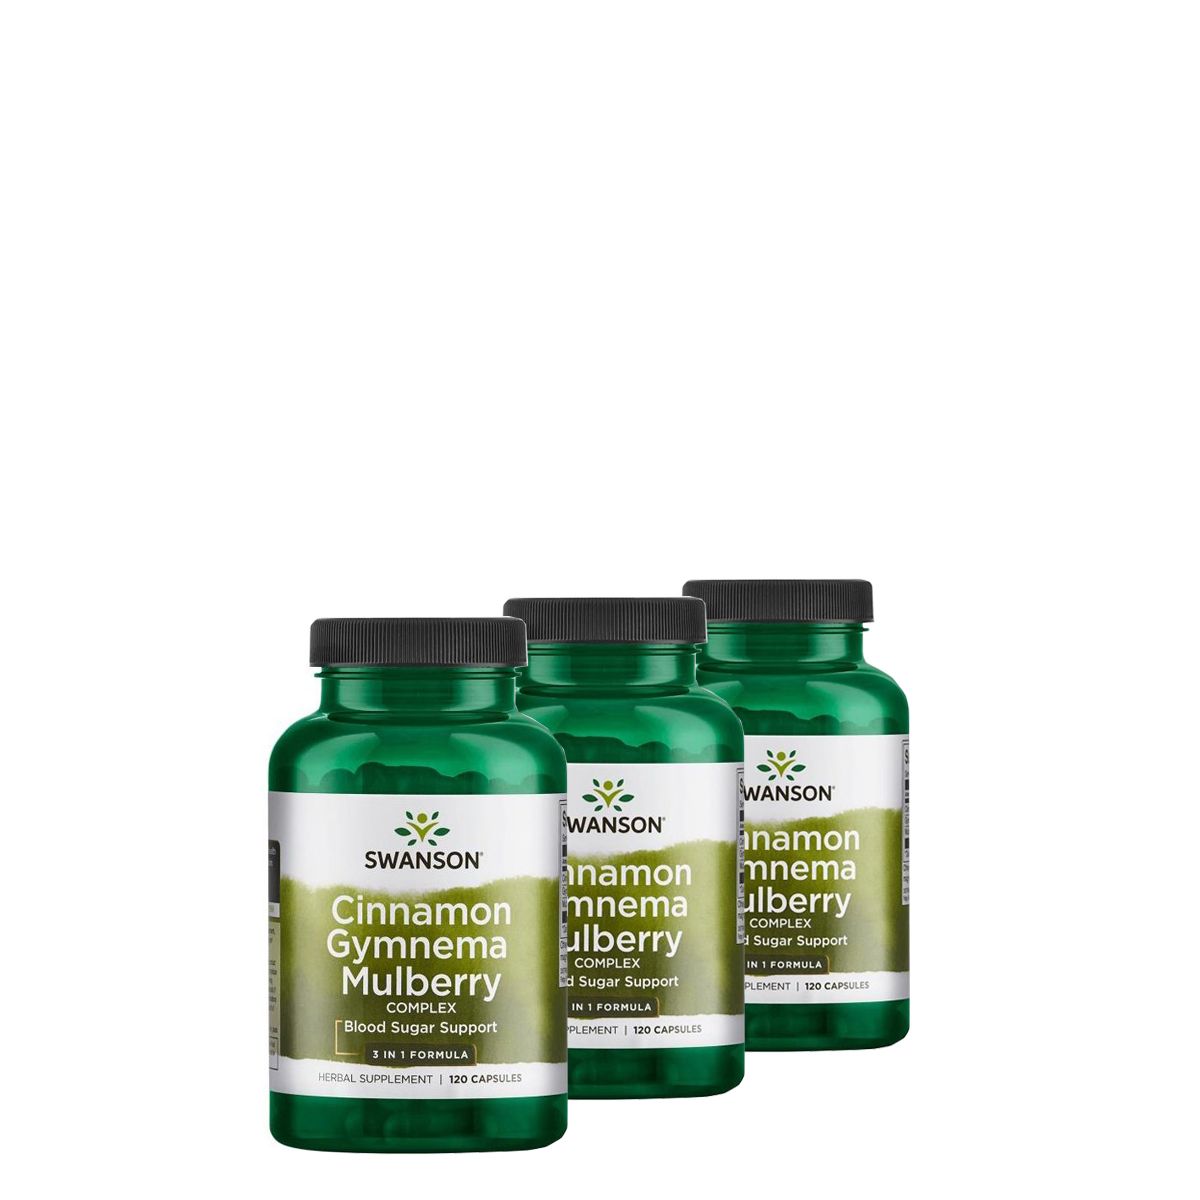 Vércukor szabályozó gyógynövény komplex, Swanson Cinnamon Gymnema & Mulberry, 3x120 kapszula